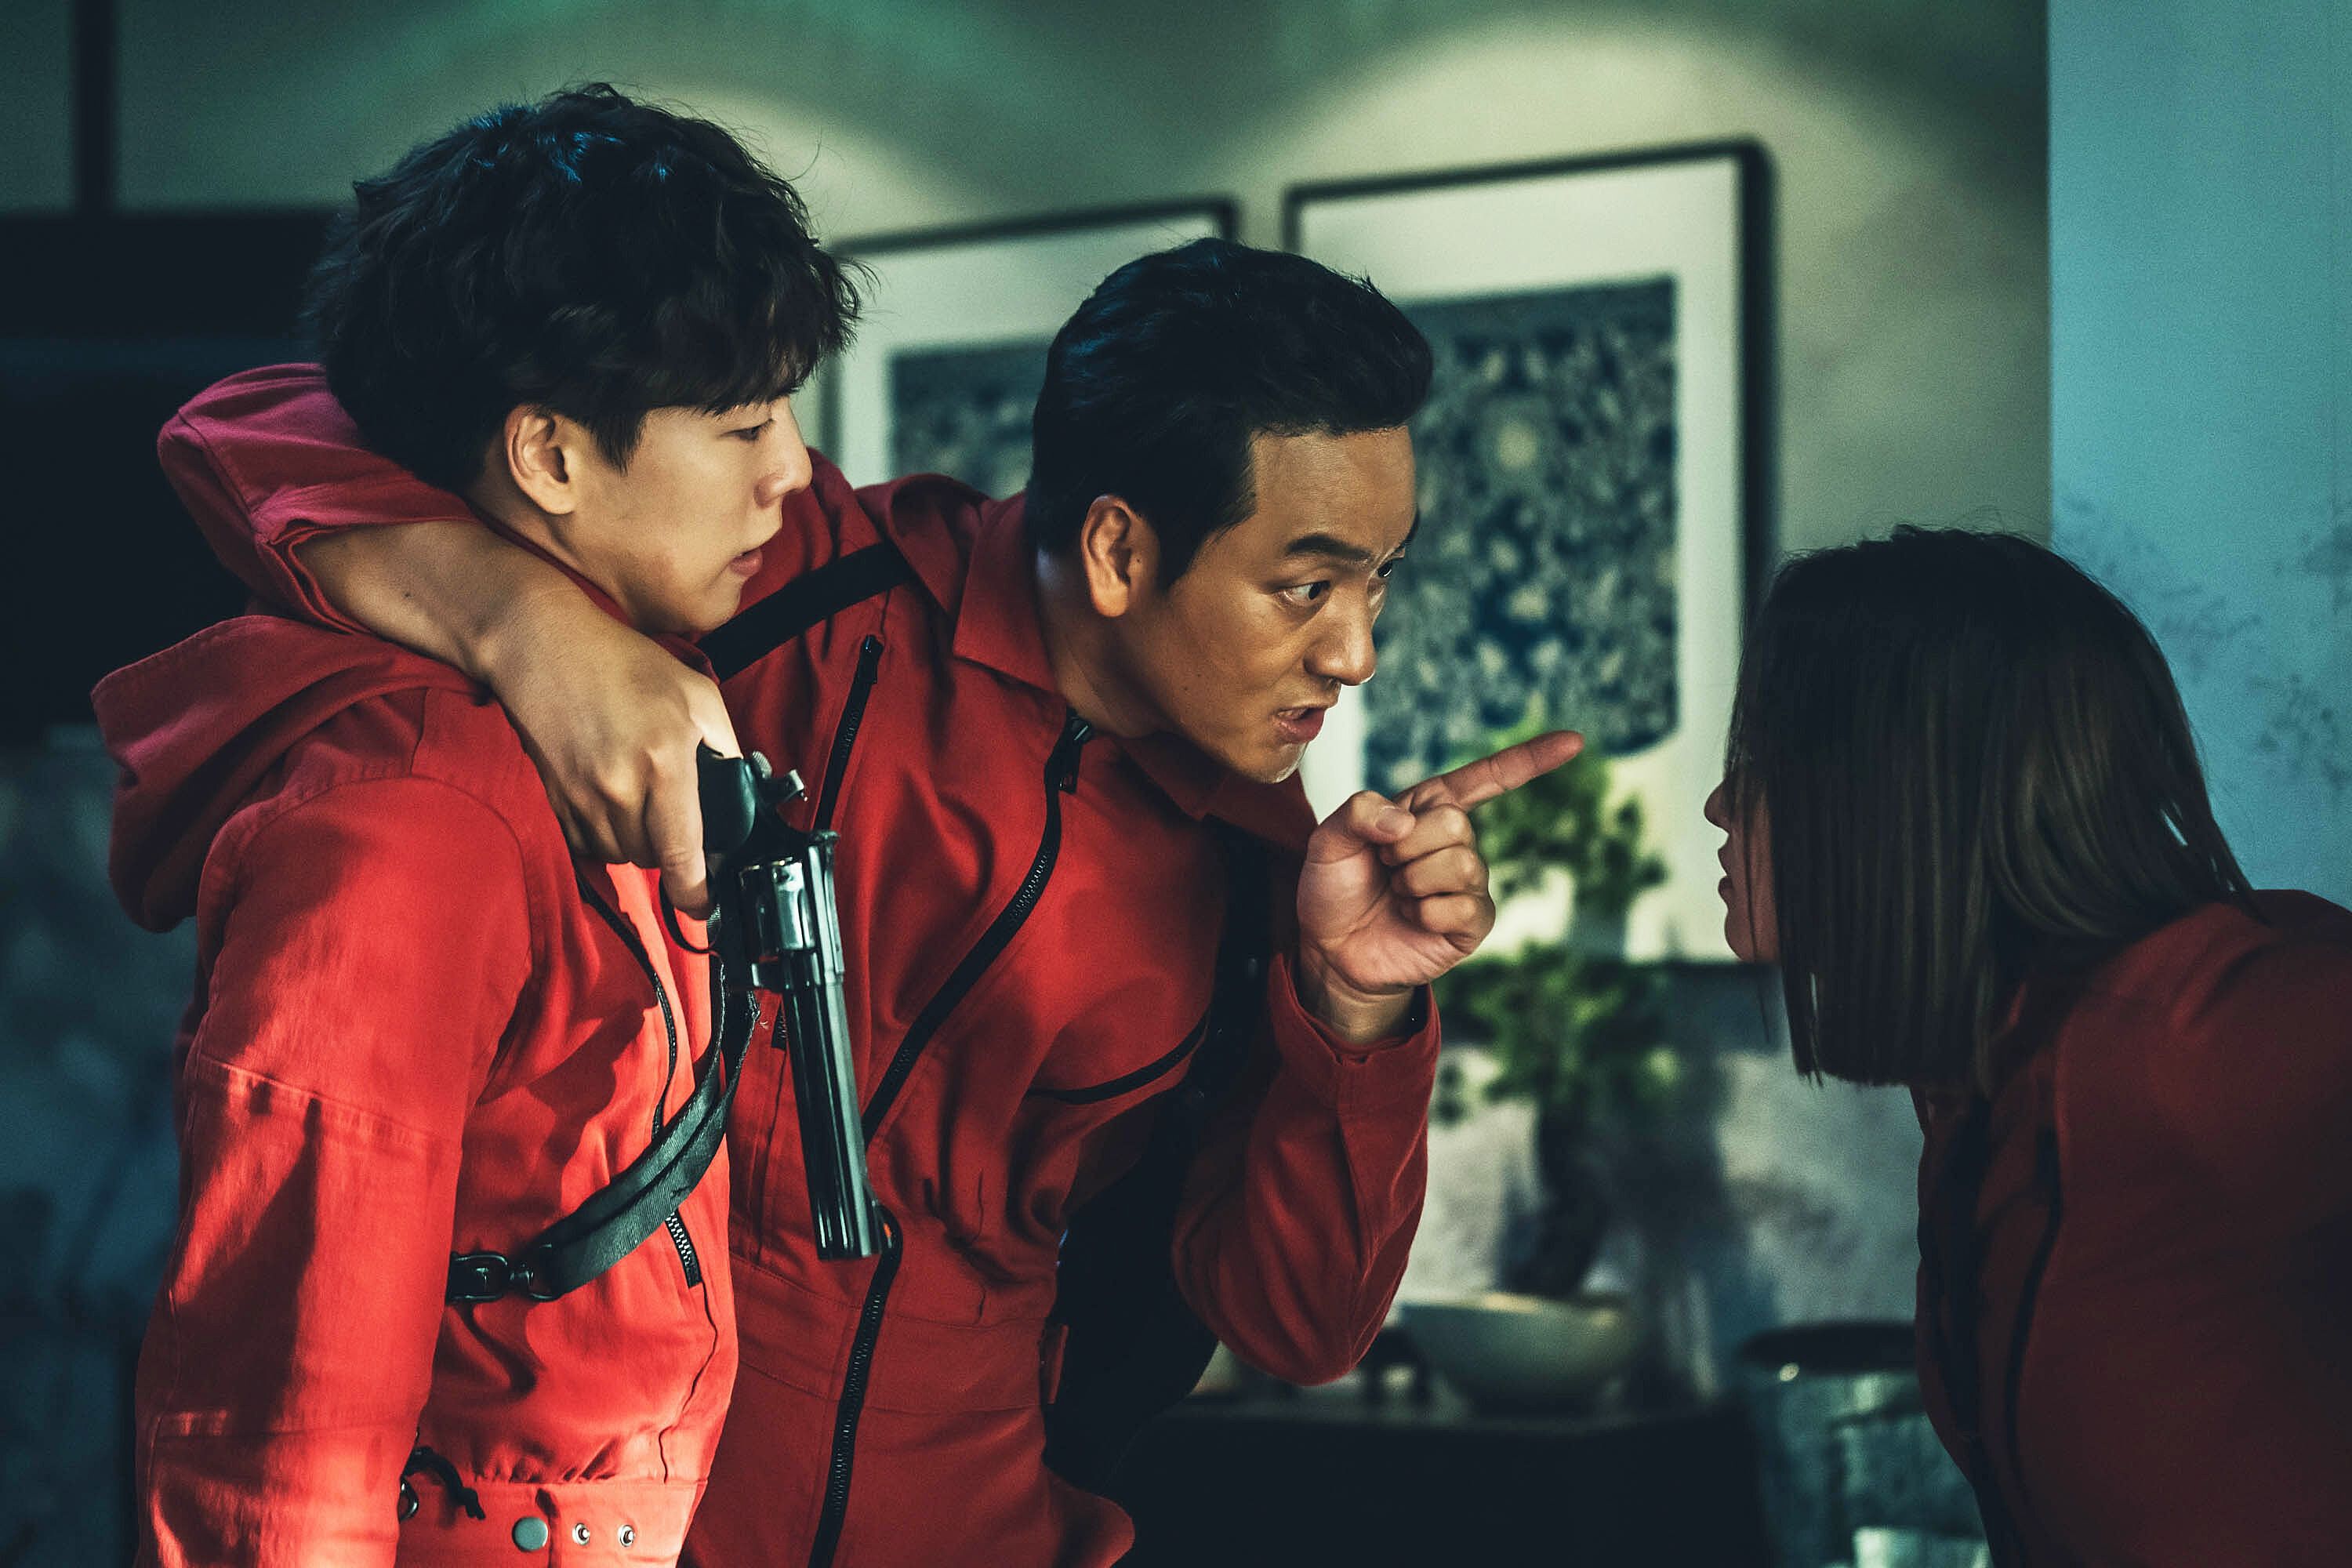 Корейский сериал "Бумажный дом" возглавил мировые чарты Netflix